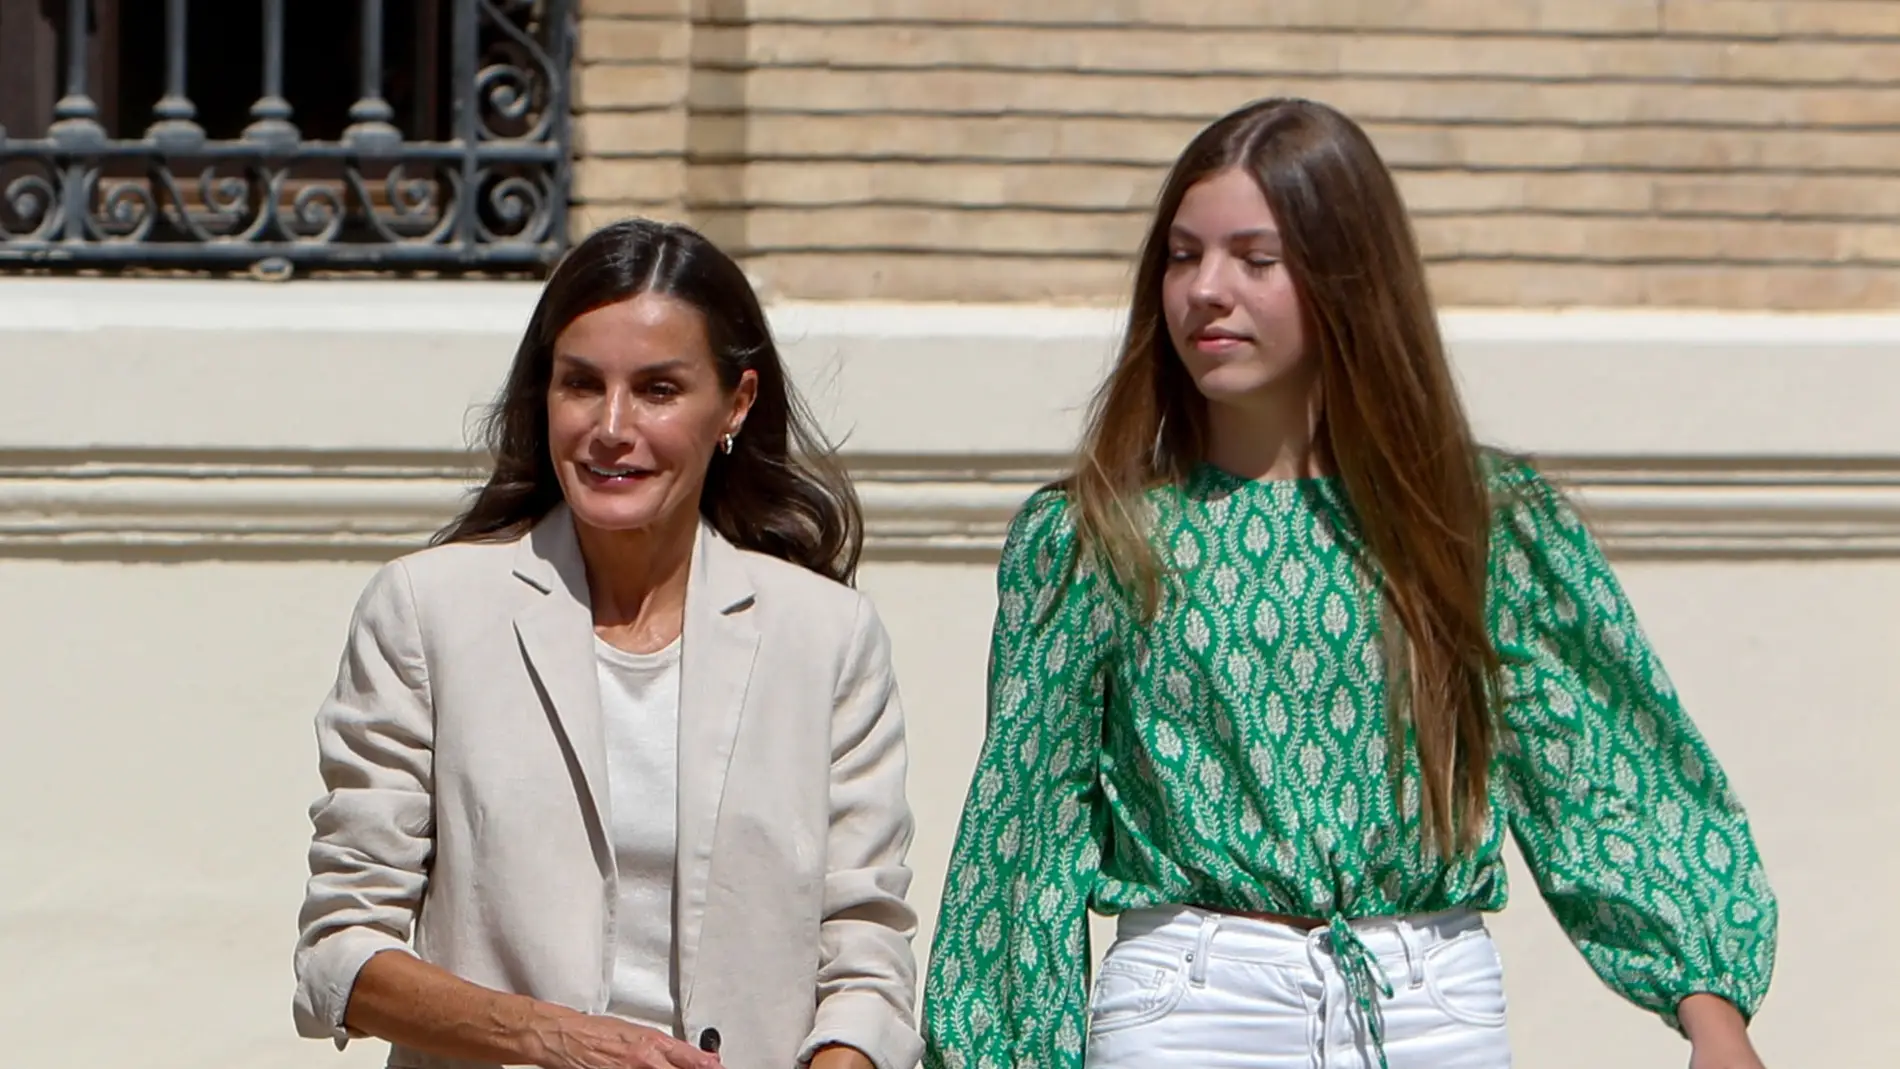 La reina Letizia y la infanta Sofía animan a la Selección: "Ya son unas campeonas"